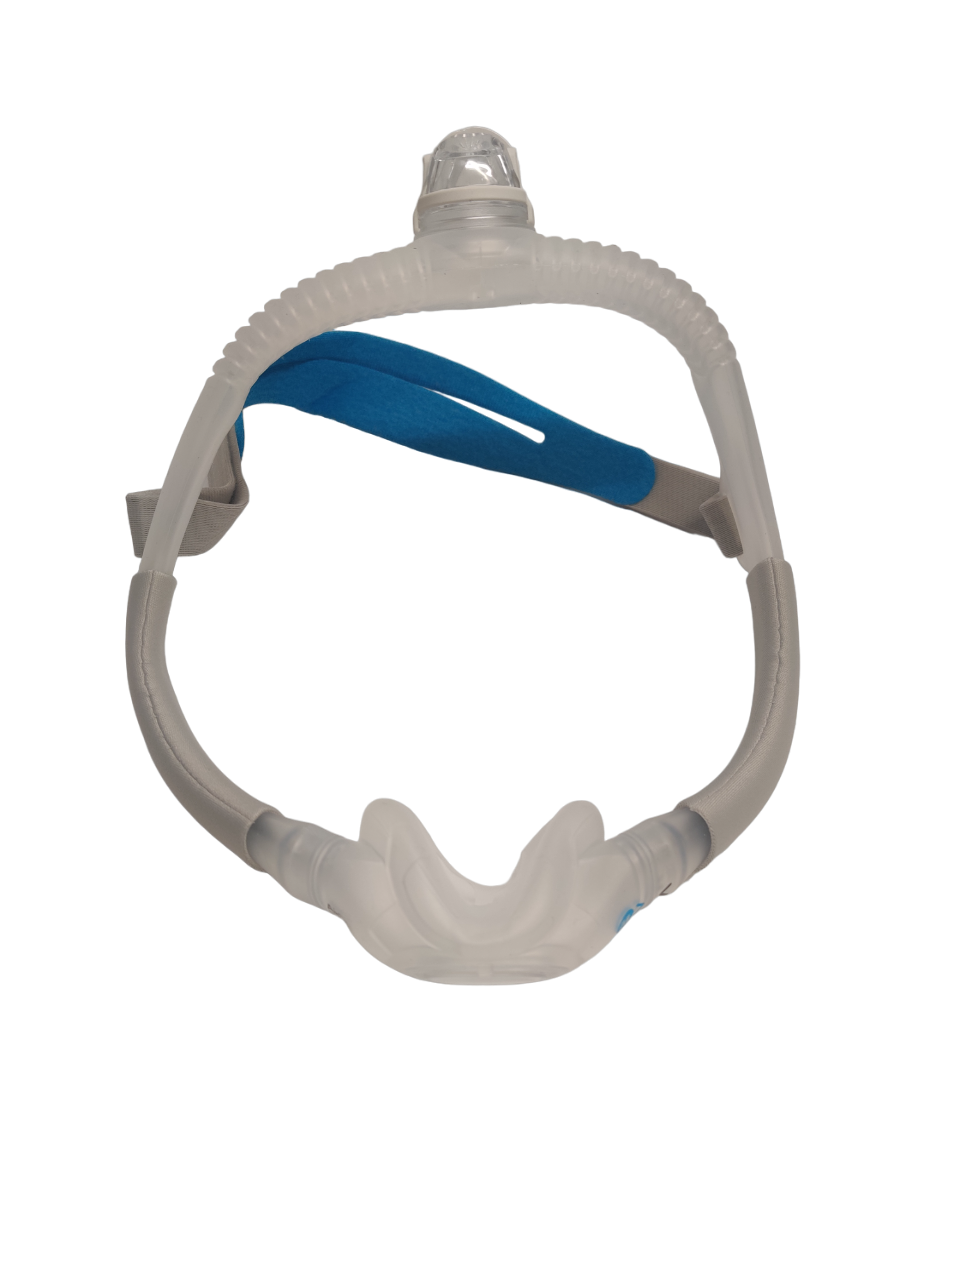 ResMed AirFit N30i Nasal CPAP Mask Kit